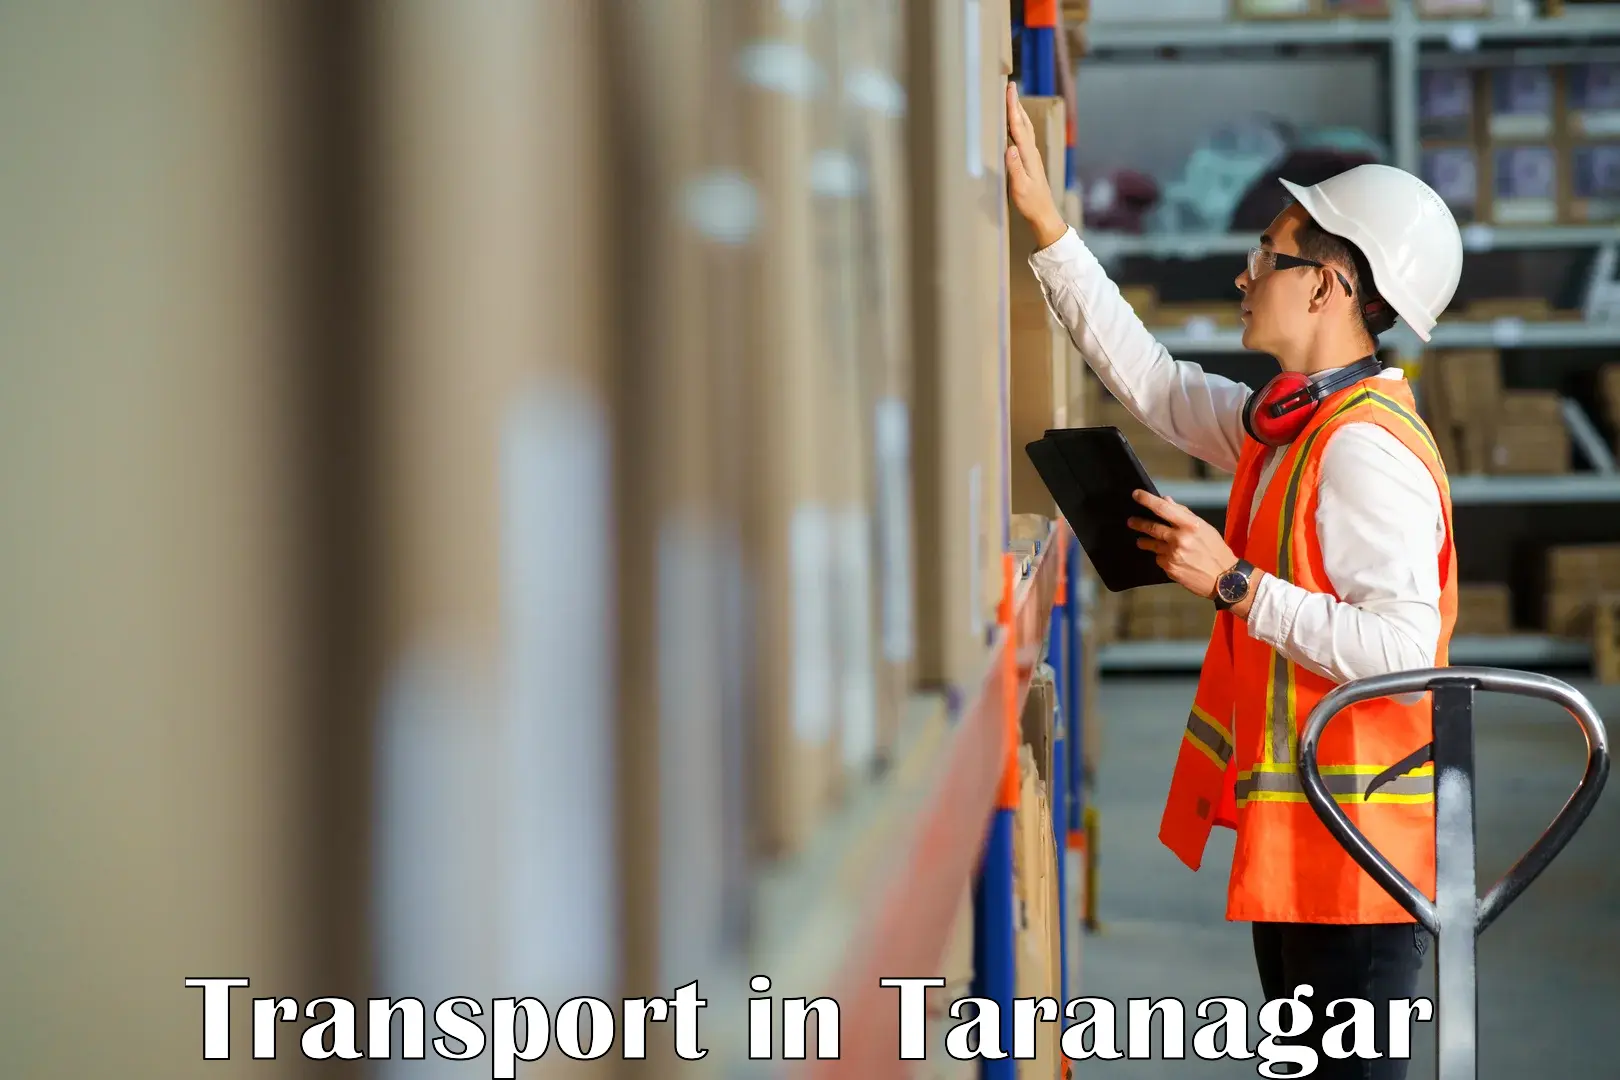 Goods transport services in Taranagar